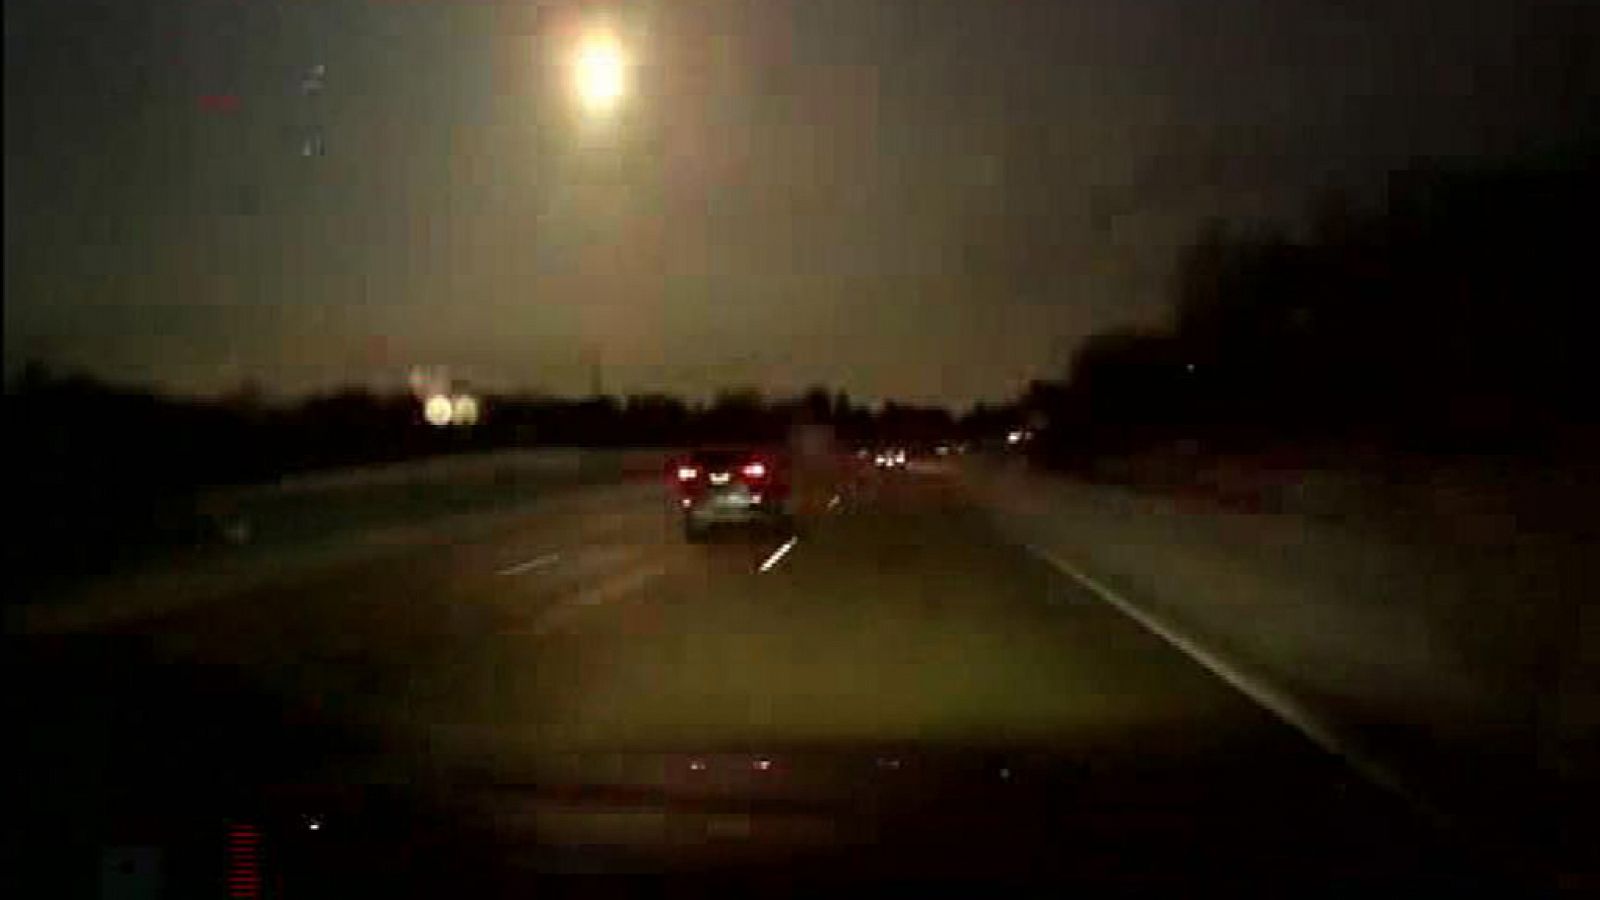 El avistamiento de un meteorito el martes por la noche en el área de los Grandes Lagos, Estados Unidos, coincidió con un terremoto de magnitud 2.0 en el estado de Michigan, lo que apunta a un posible impacto.De acuerdo con las informaciones sobre el 